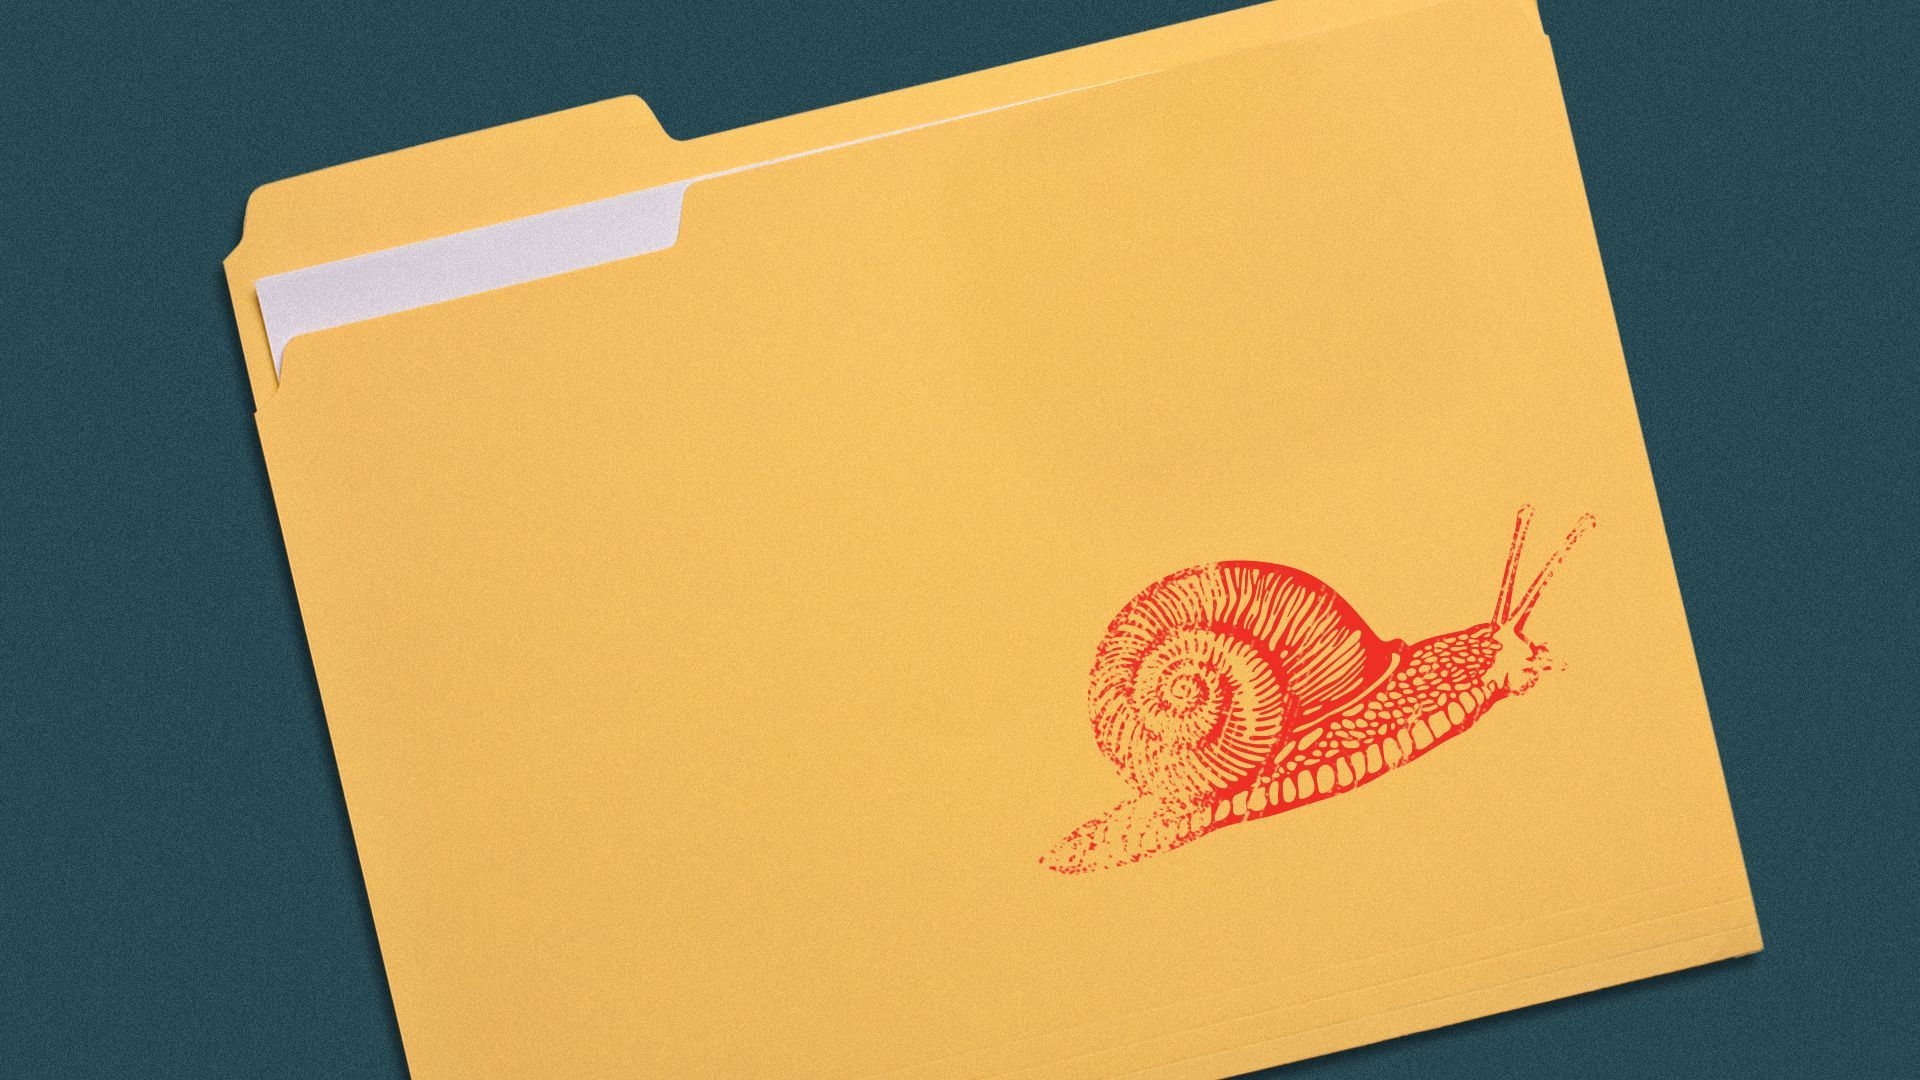 Illustration of a snail stamp on a folder.